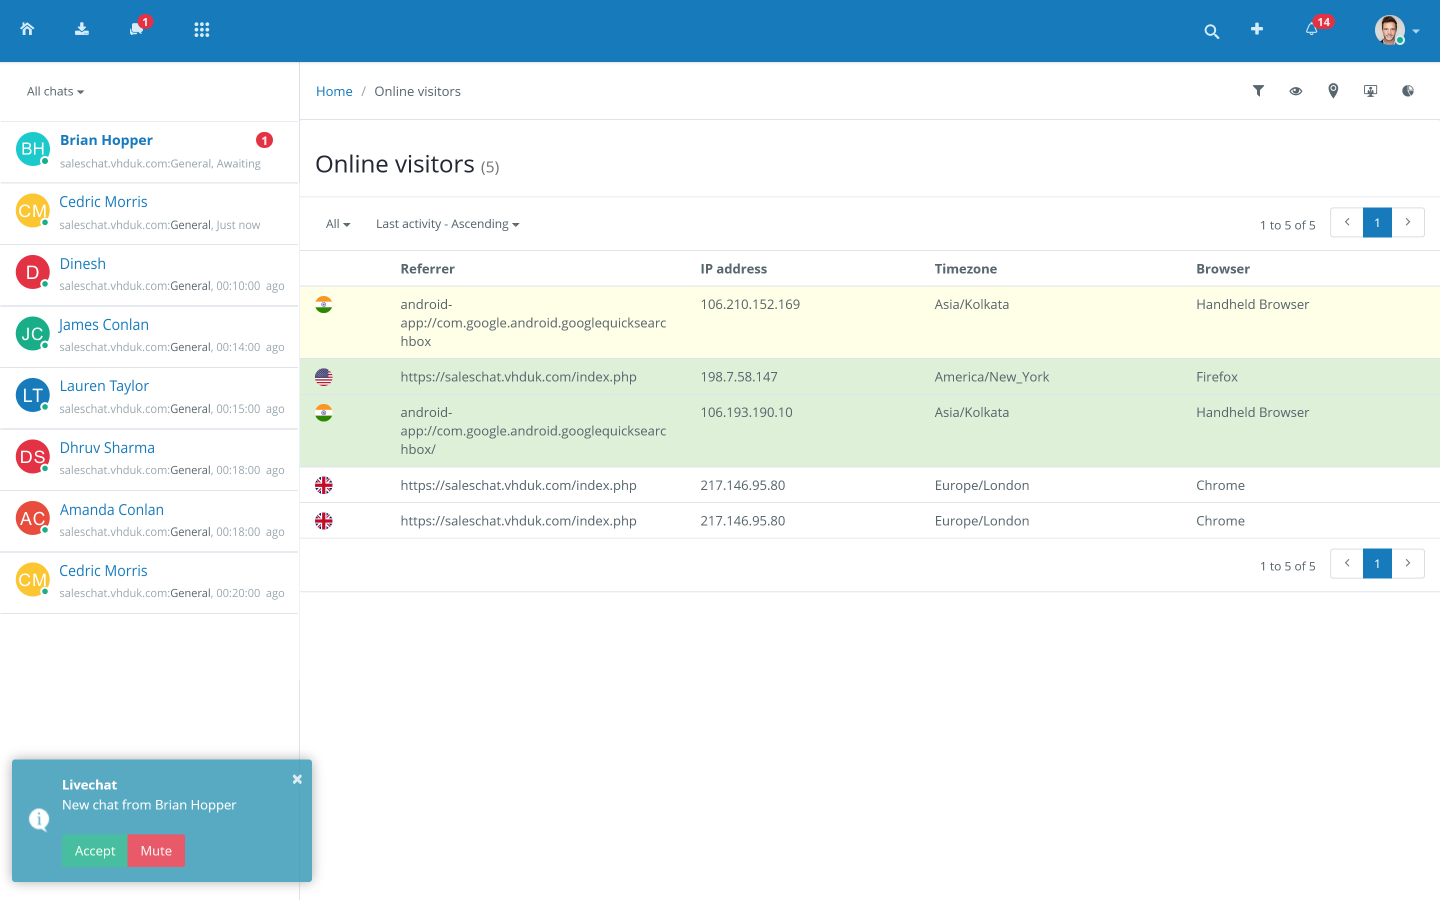 Vision Helpdesk Software - Live Chat Visitors Management